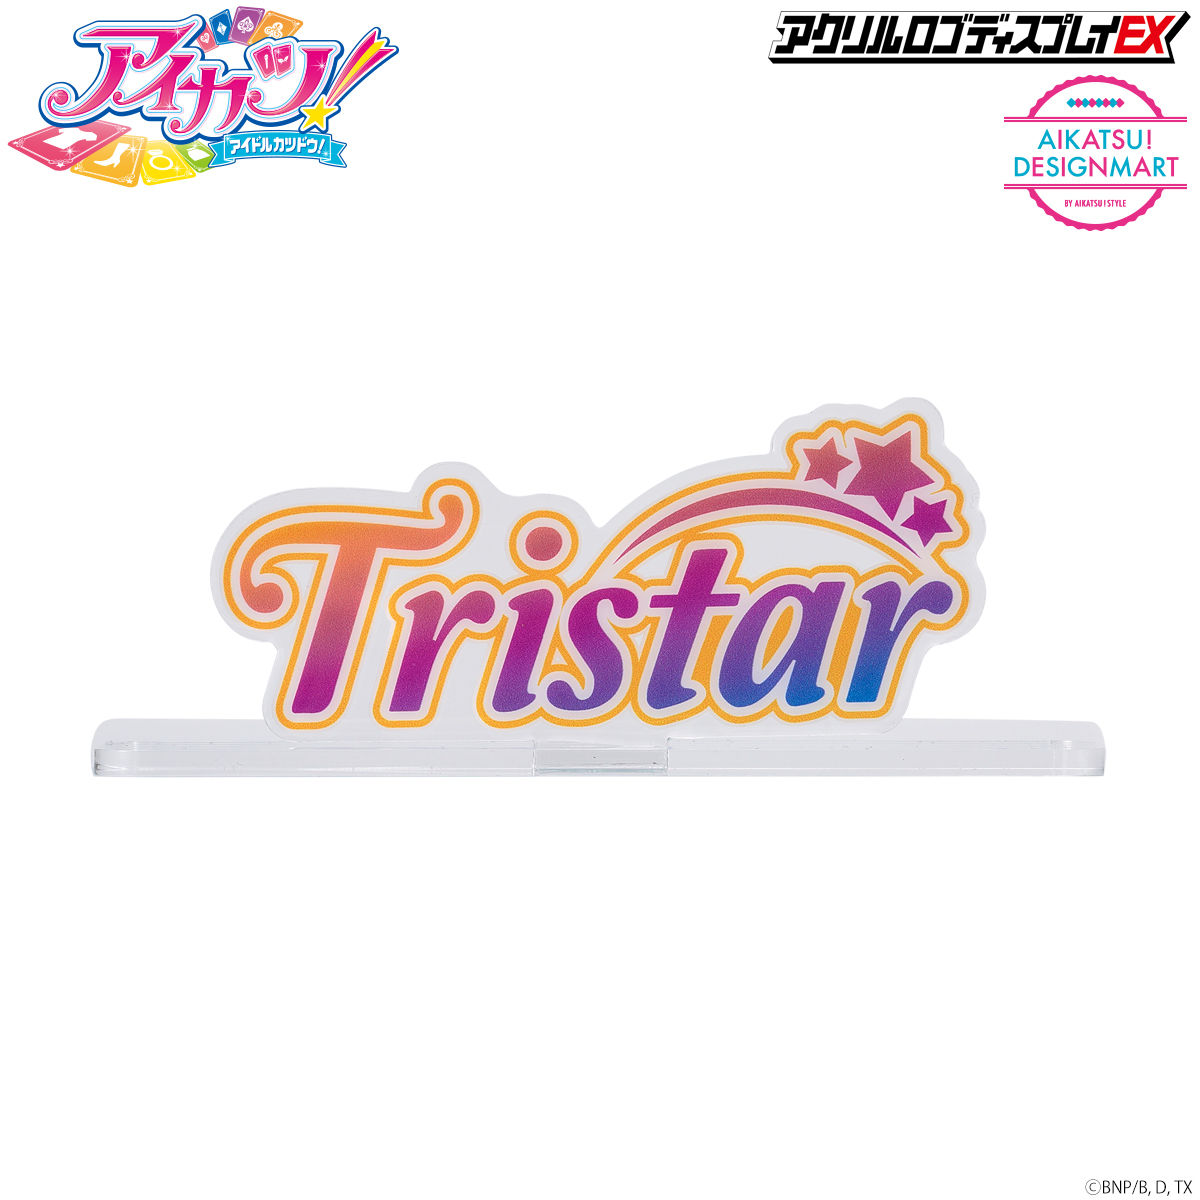 アイカツ 海外版カード トライスター Tristar - アイカツ